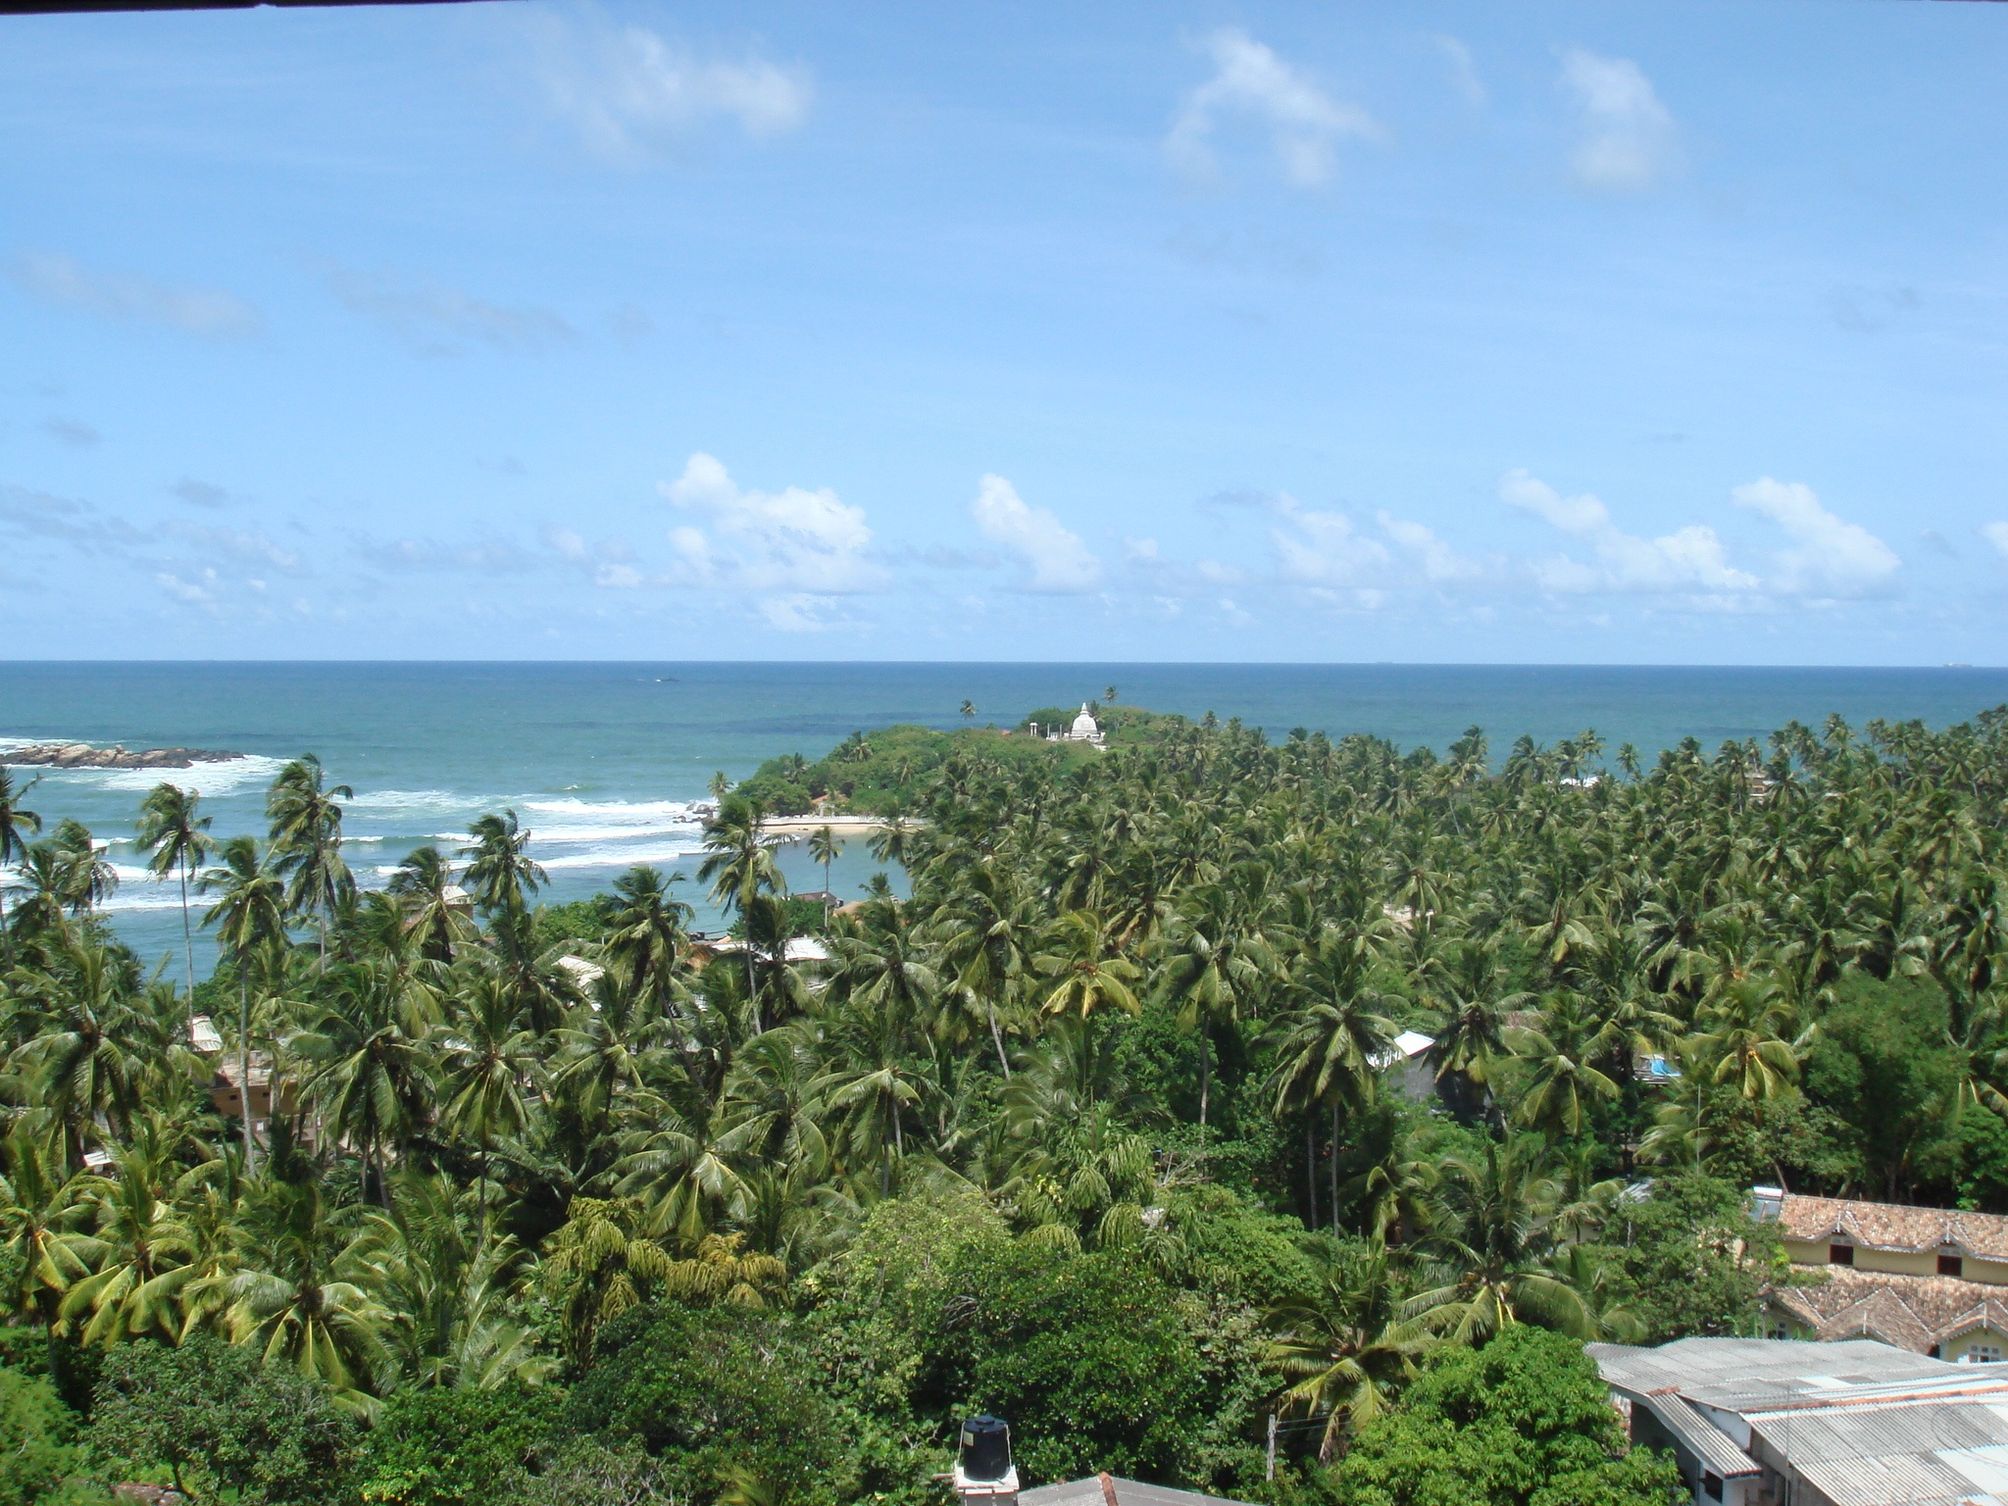 Jihovýchodní pobřeží Srí Lanky